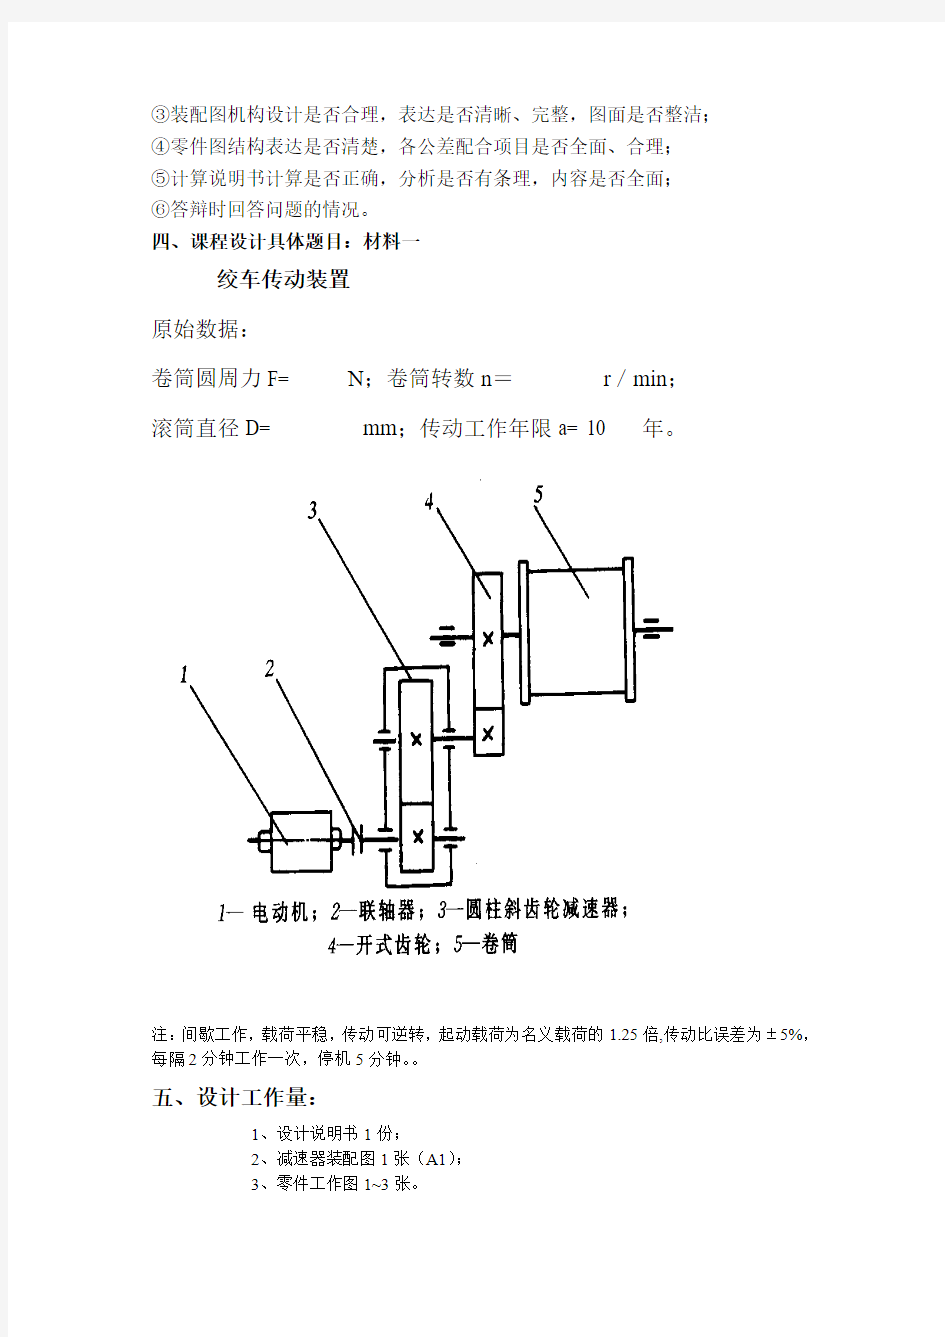 机械设计基础课程设计任务书(123)